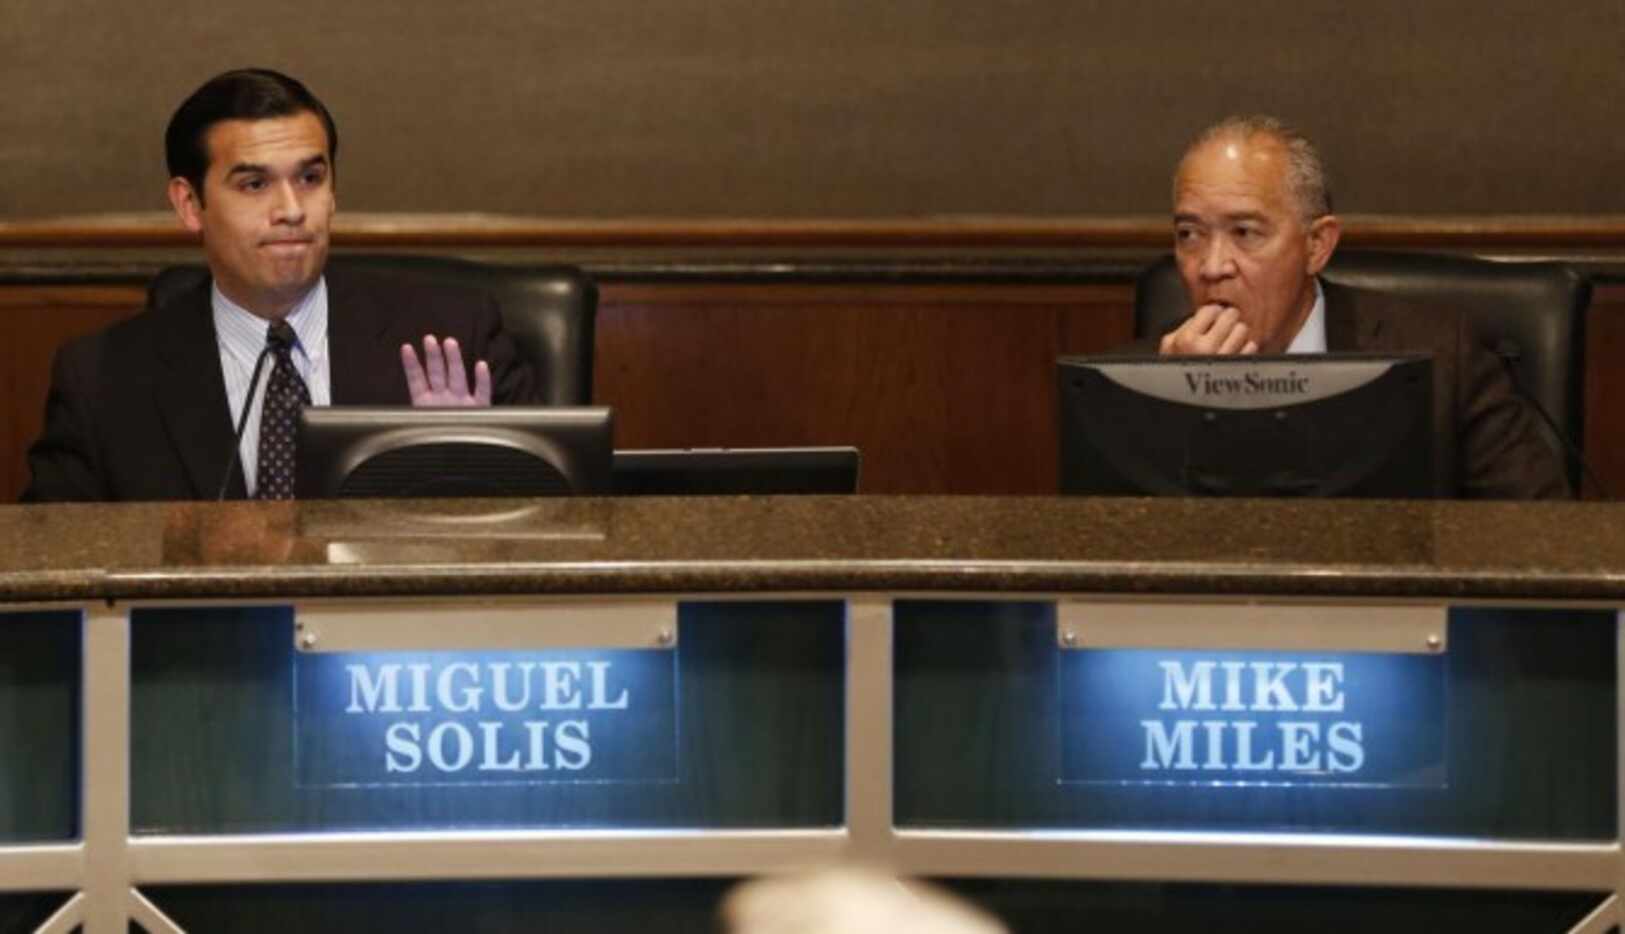 Un juez de Dallas ordenó el martes al presidente de la mesa directiva del DISD, Miguel Solís...